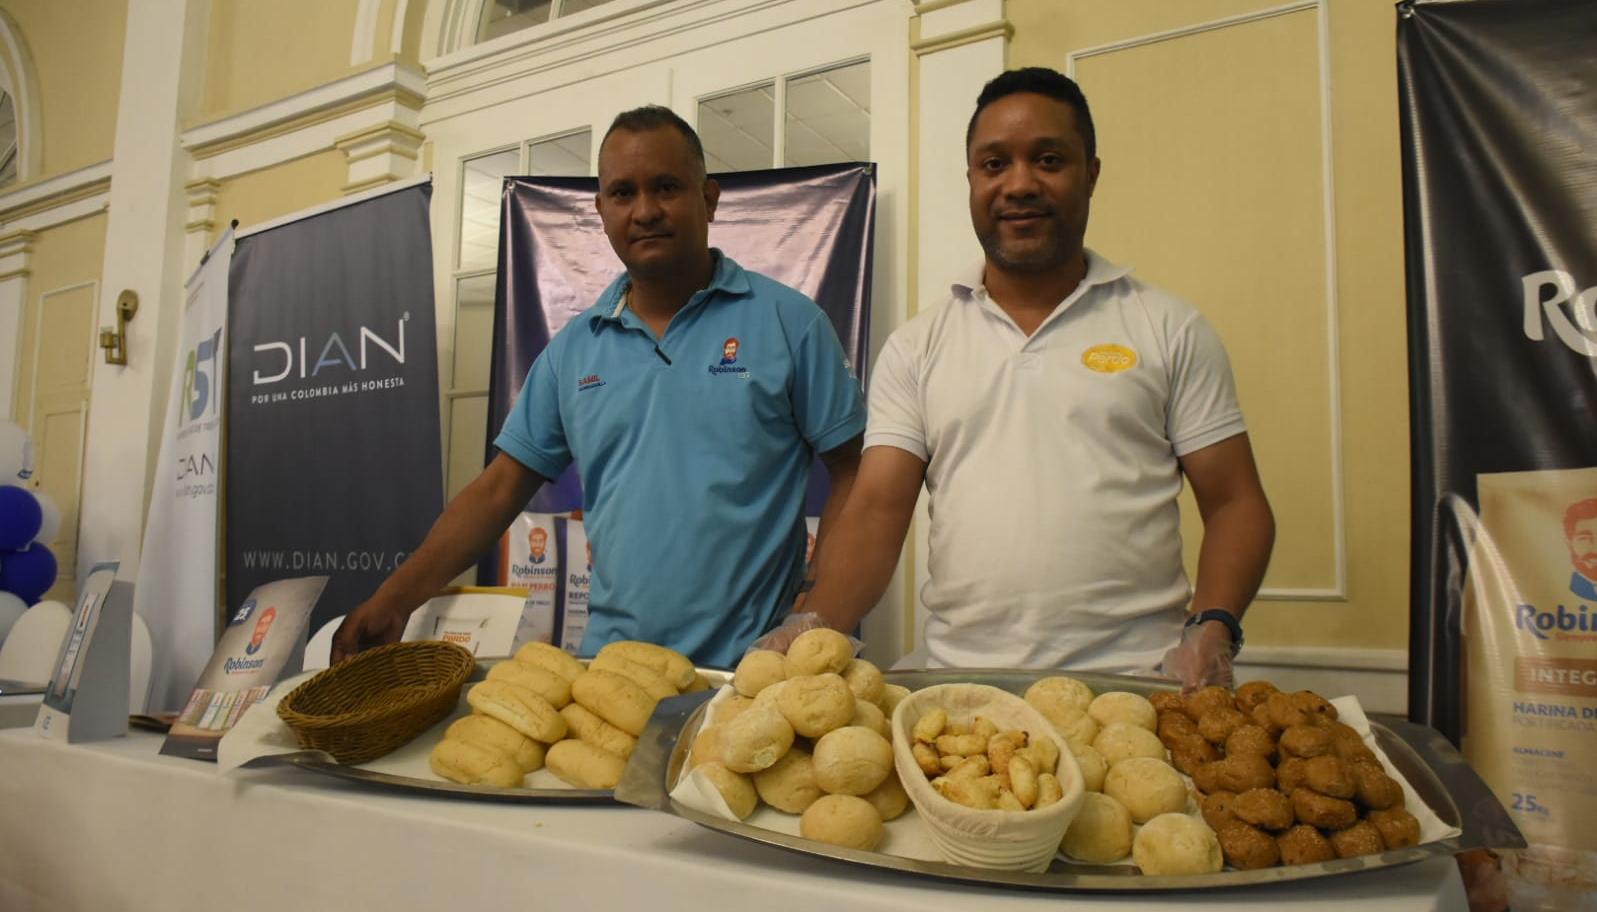 Proveedores en el evento 'Barranquilla huele a pan'.